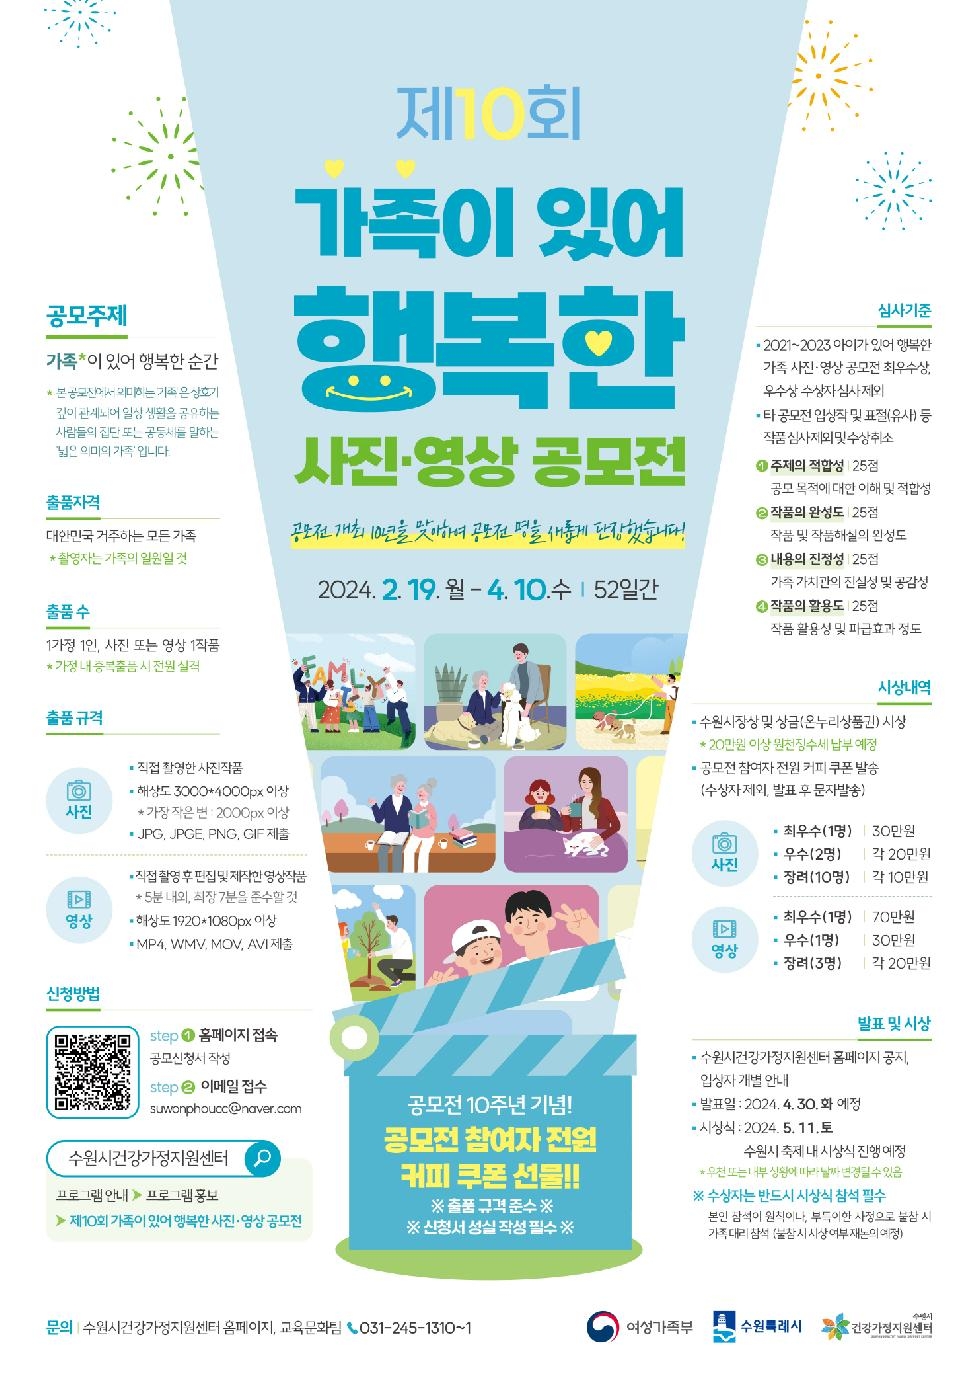 수원시, 제10회 ‘가족이 있어 행복한 사진·영상 공모전’ 개최